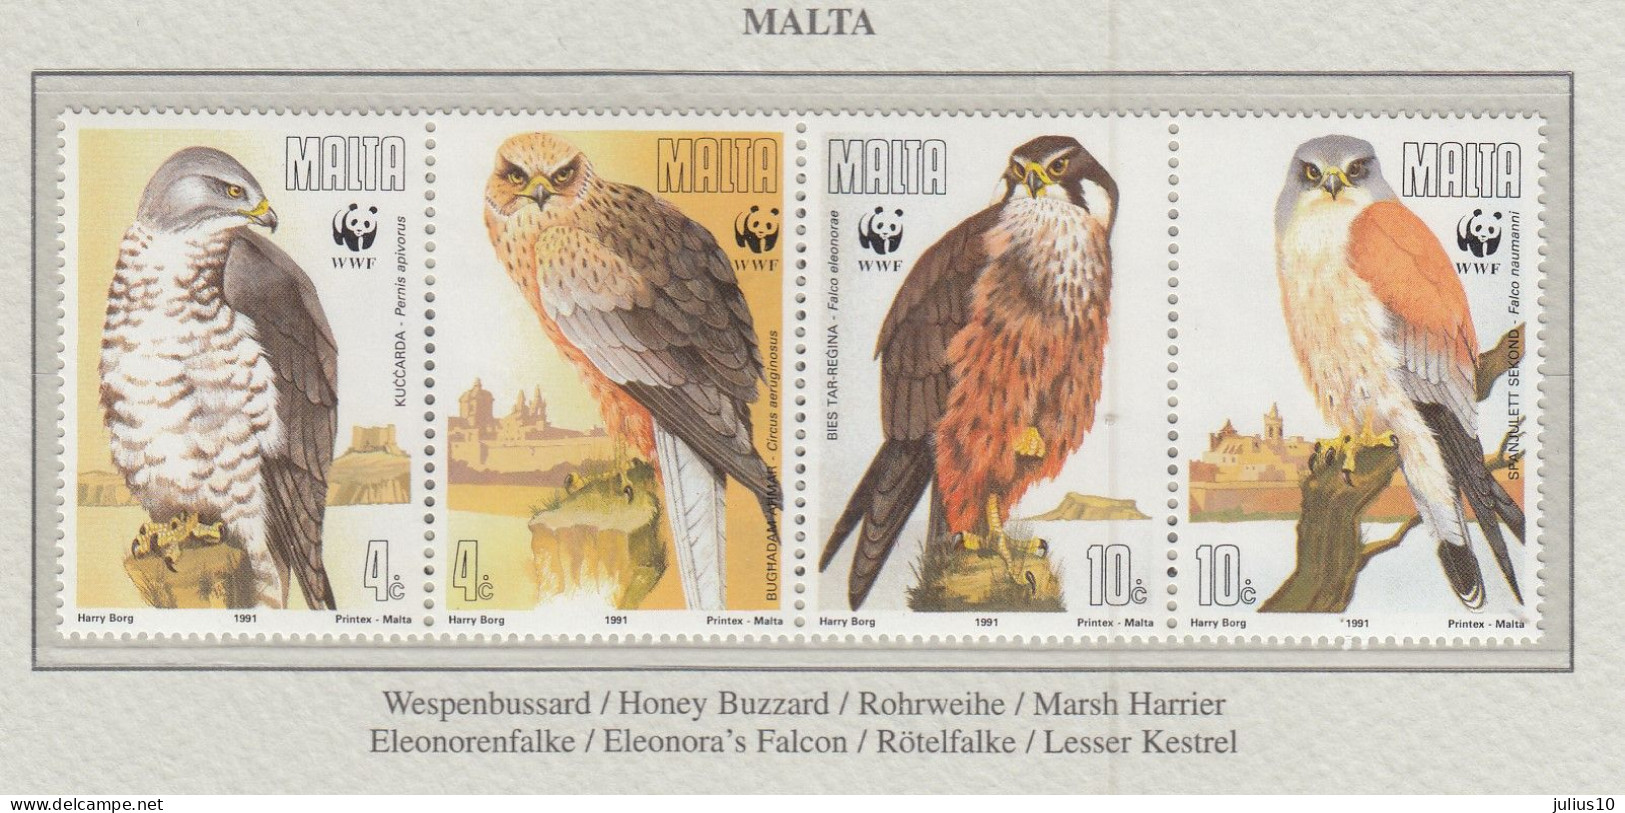 MALTA 1991 WWF Birds Mi 864-867 MNH(**) Fauna 798 - Águilas & Aves De Presa